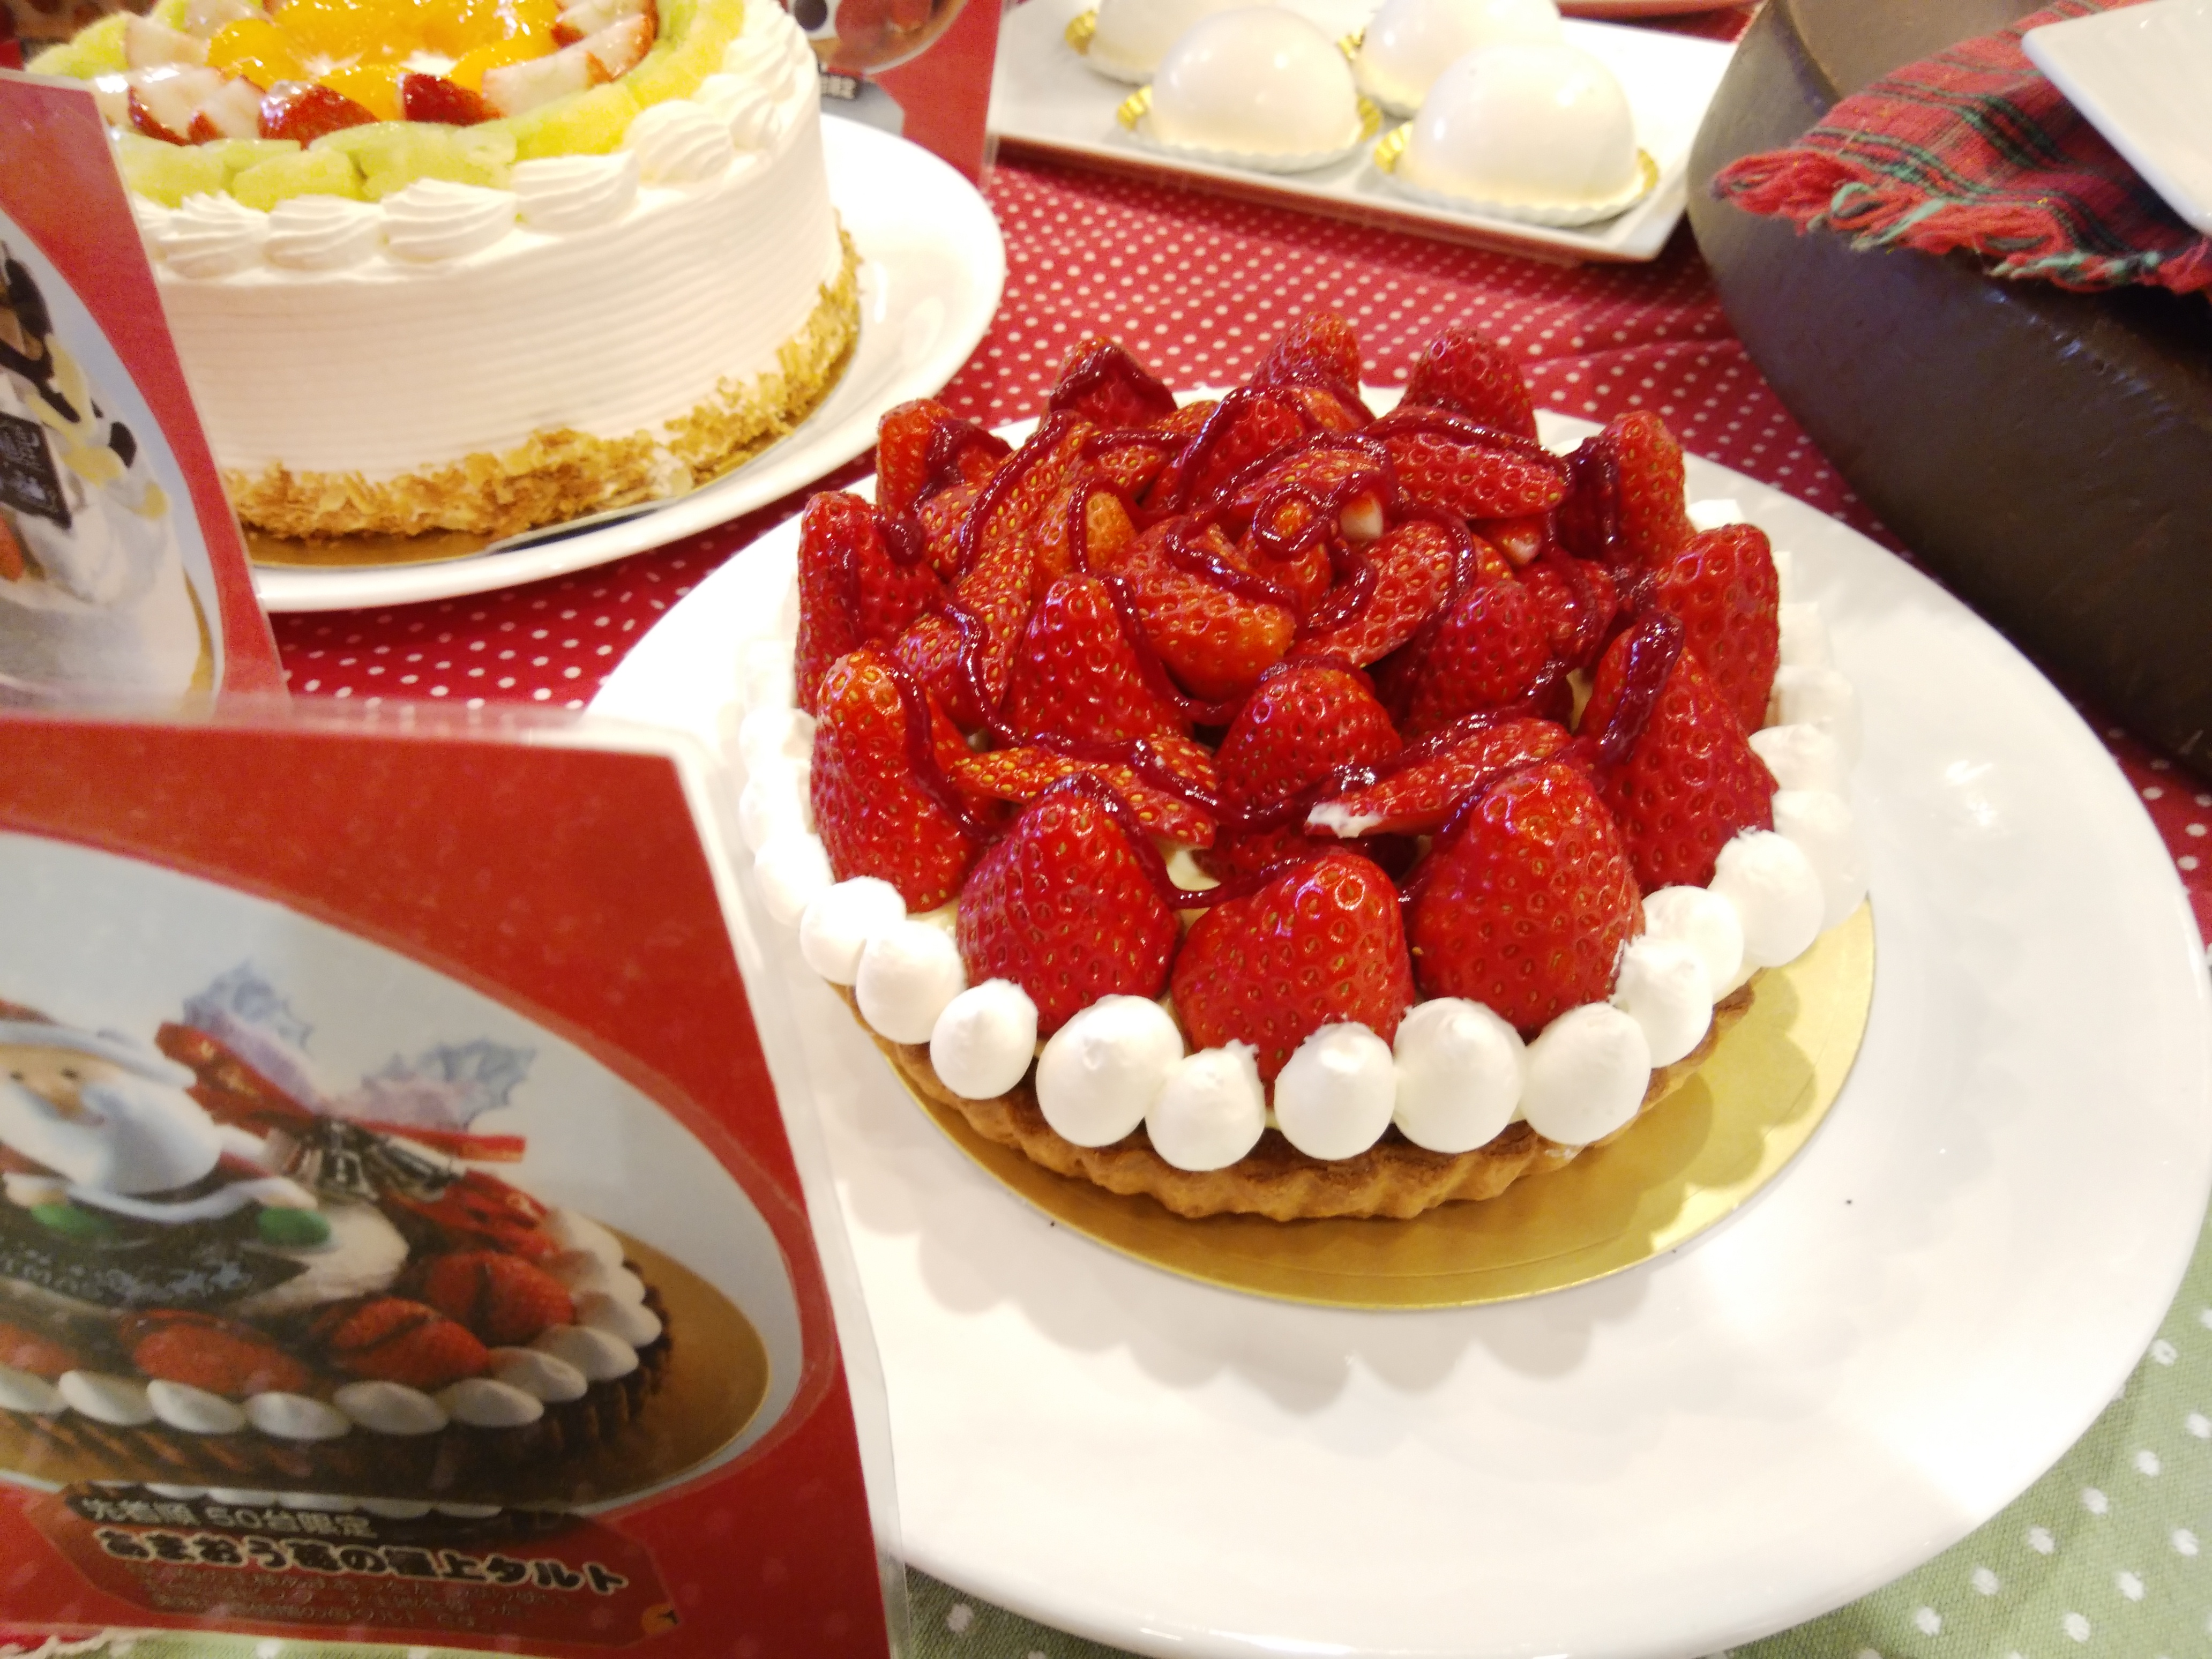 ケーキハウス マルフジ 小松市 三度の飯よりケーキ好き 三重県にもっとケーキバイキングを